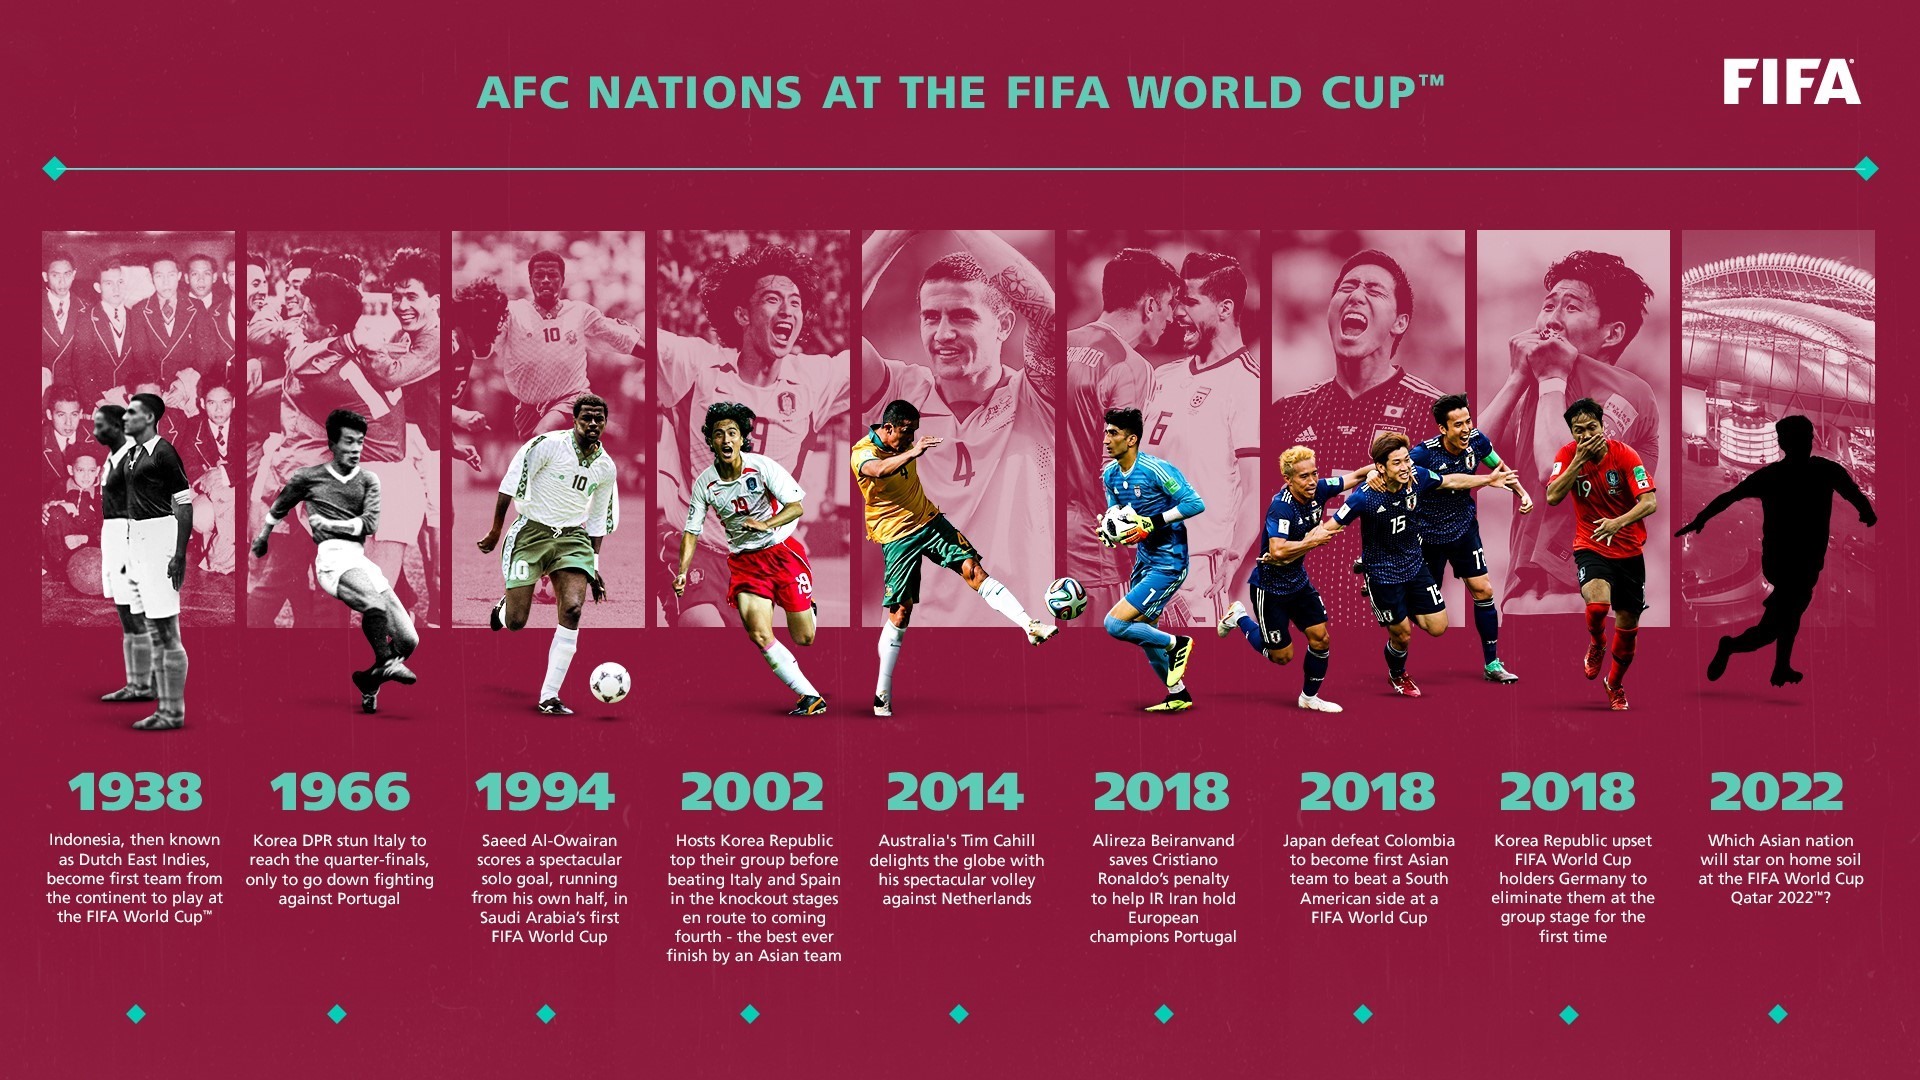 Bóng đá Châu Á trong World Cup 2022 sẽ là thử thách lớn đối với các cầu thủ châu Á khi họ sẽ phải đối đầu với những đội tuyển mạnh nhất thế giới. Tuy nhiên, đội tuyển Châu Á đã thể hiện sức mạnh của mình trong những kỳ World Cup trước đó và chắc chắn rằng họ sẽ gây ấn tượng với khán giả trên toàn thế giới.